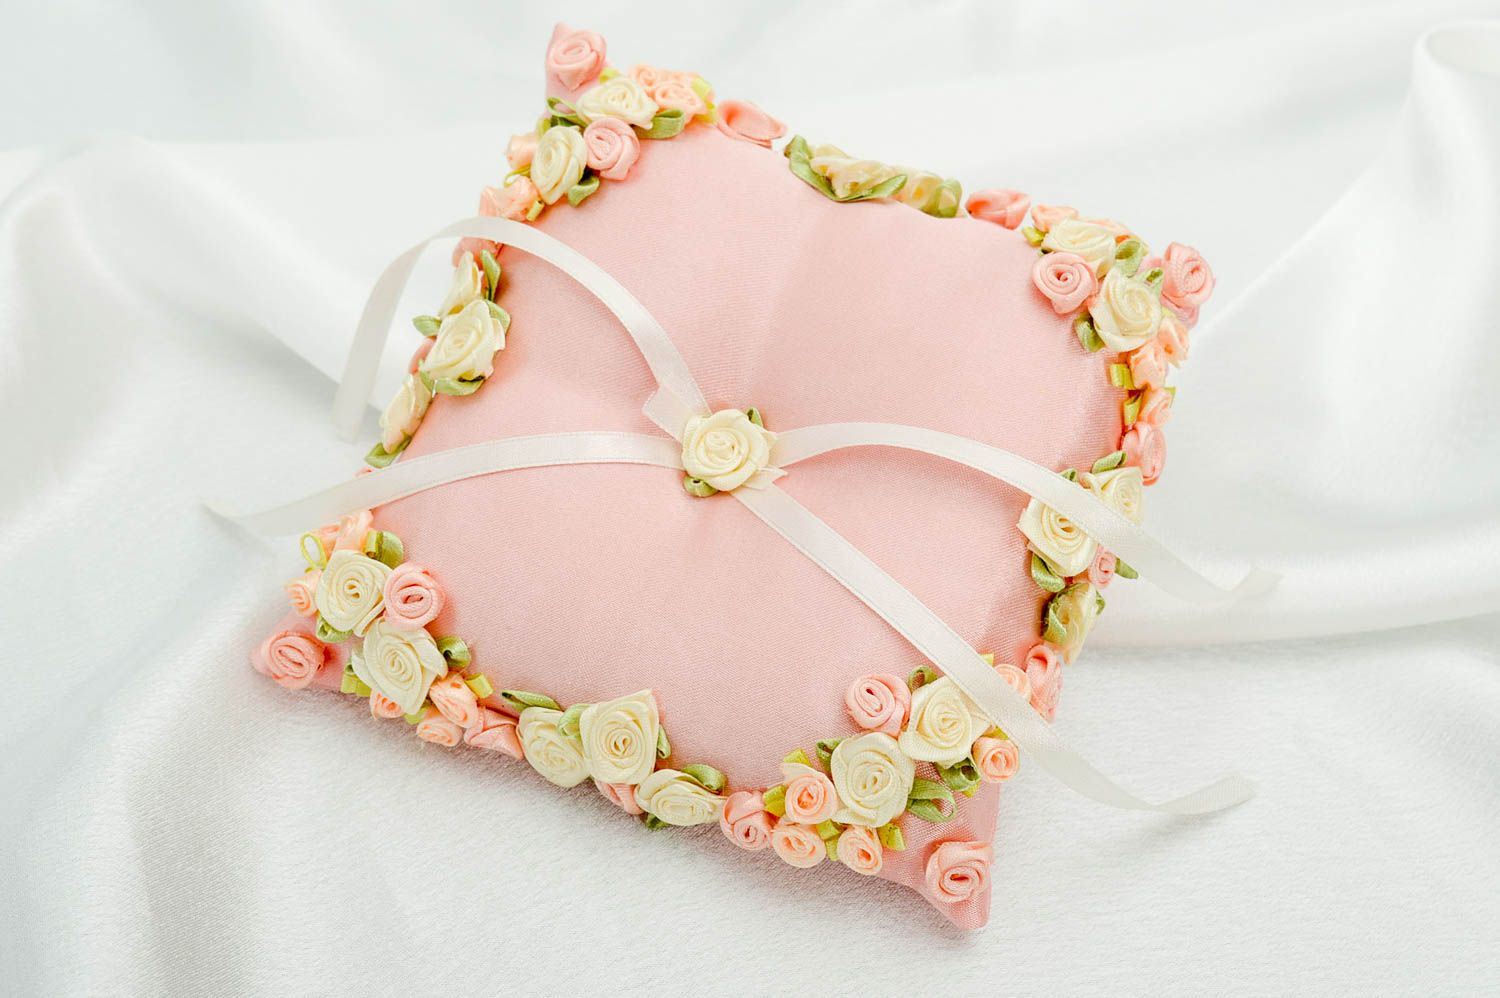 Handmade pillow wedding pillow wedding accessories designer wedding pillow photo 1